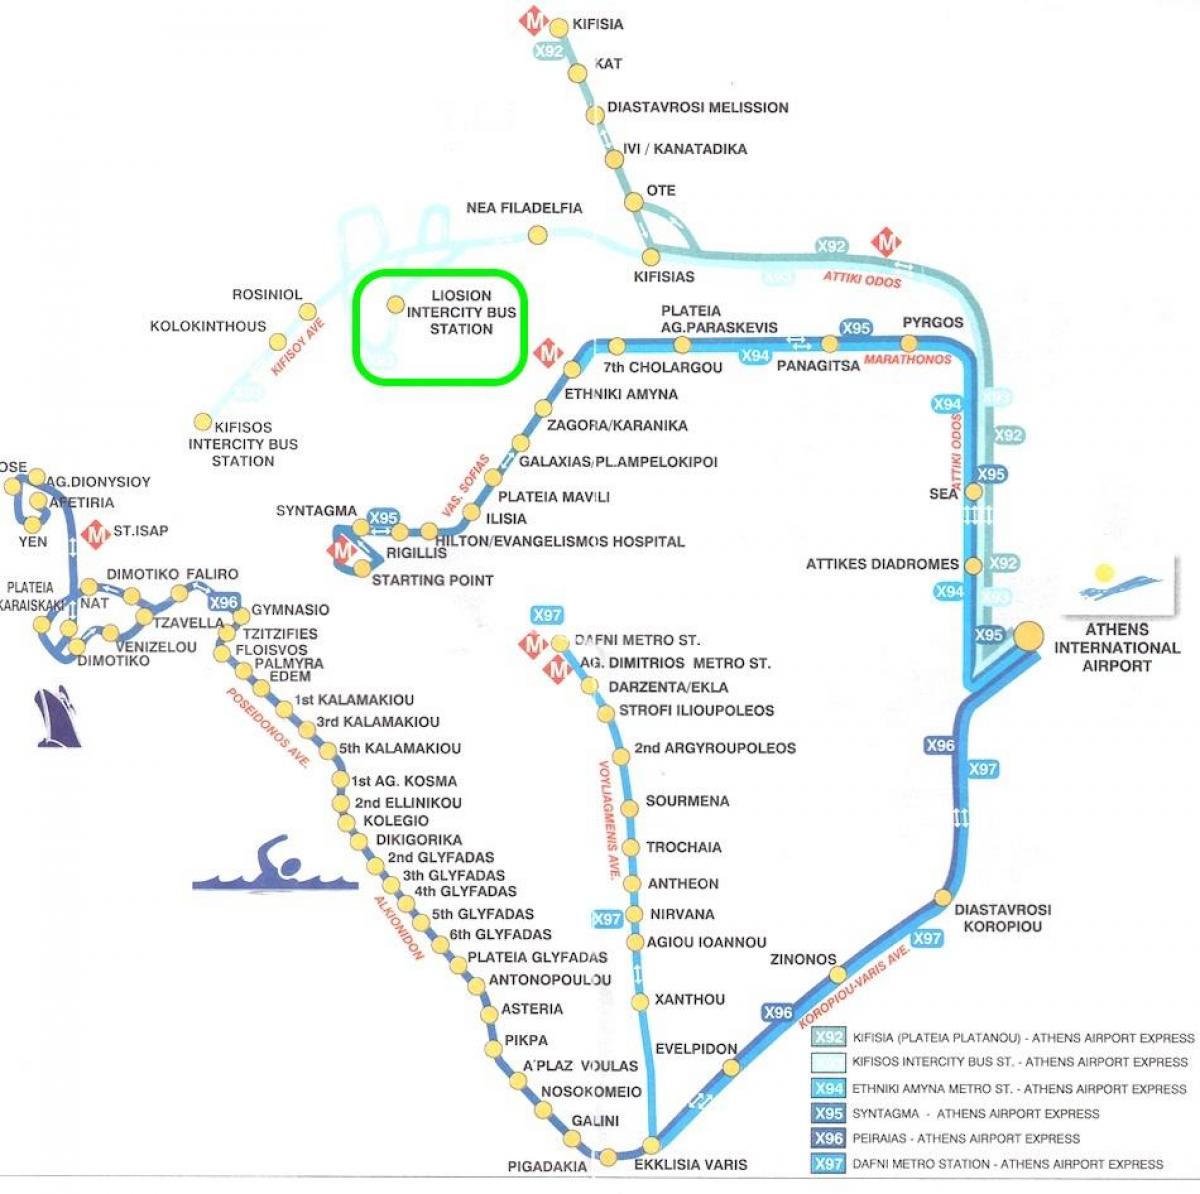 kaart van liosion busstation Athene 